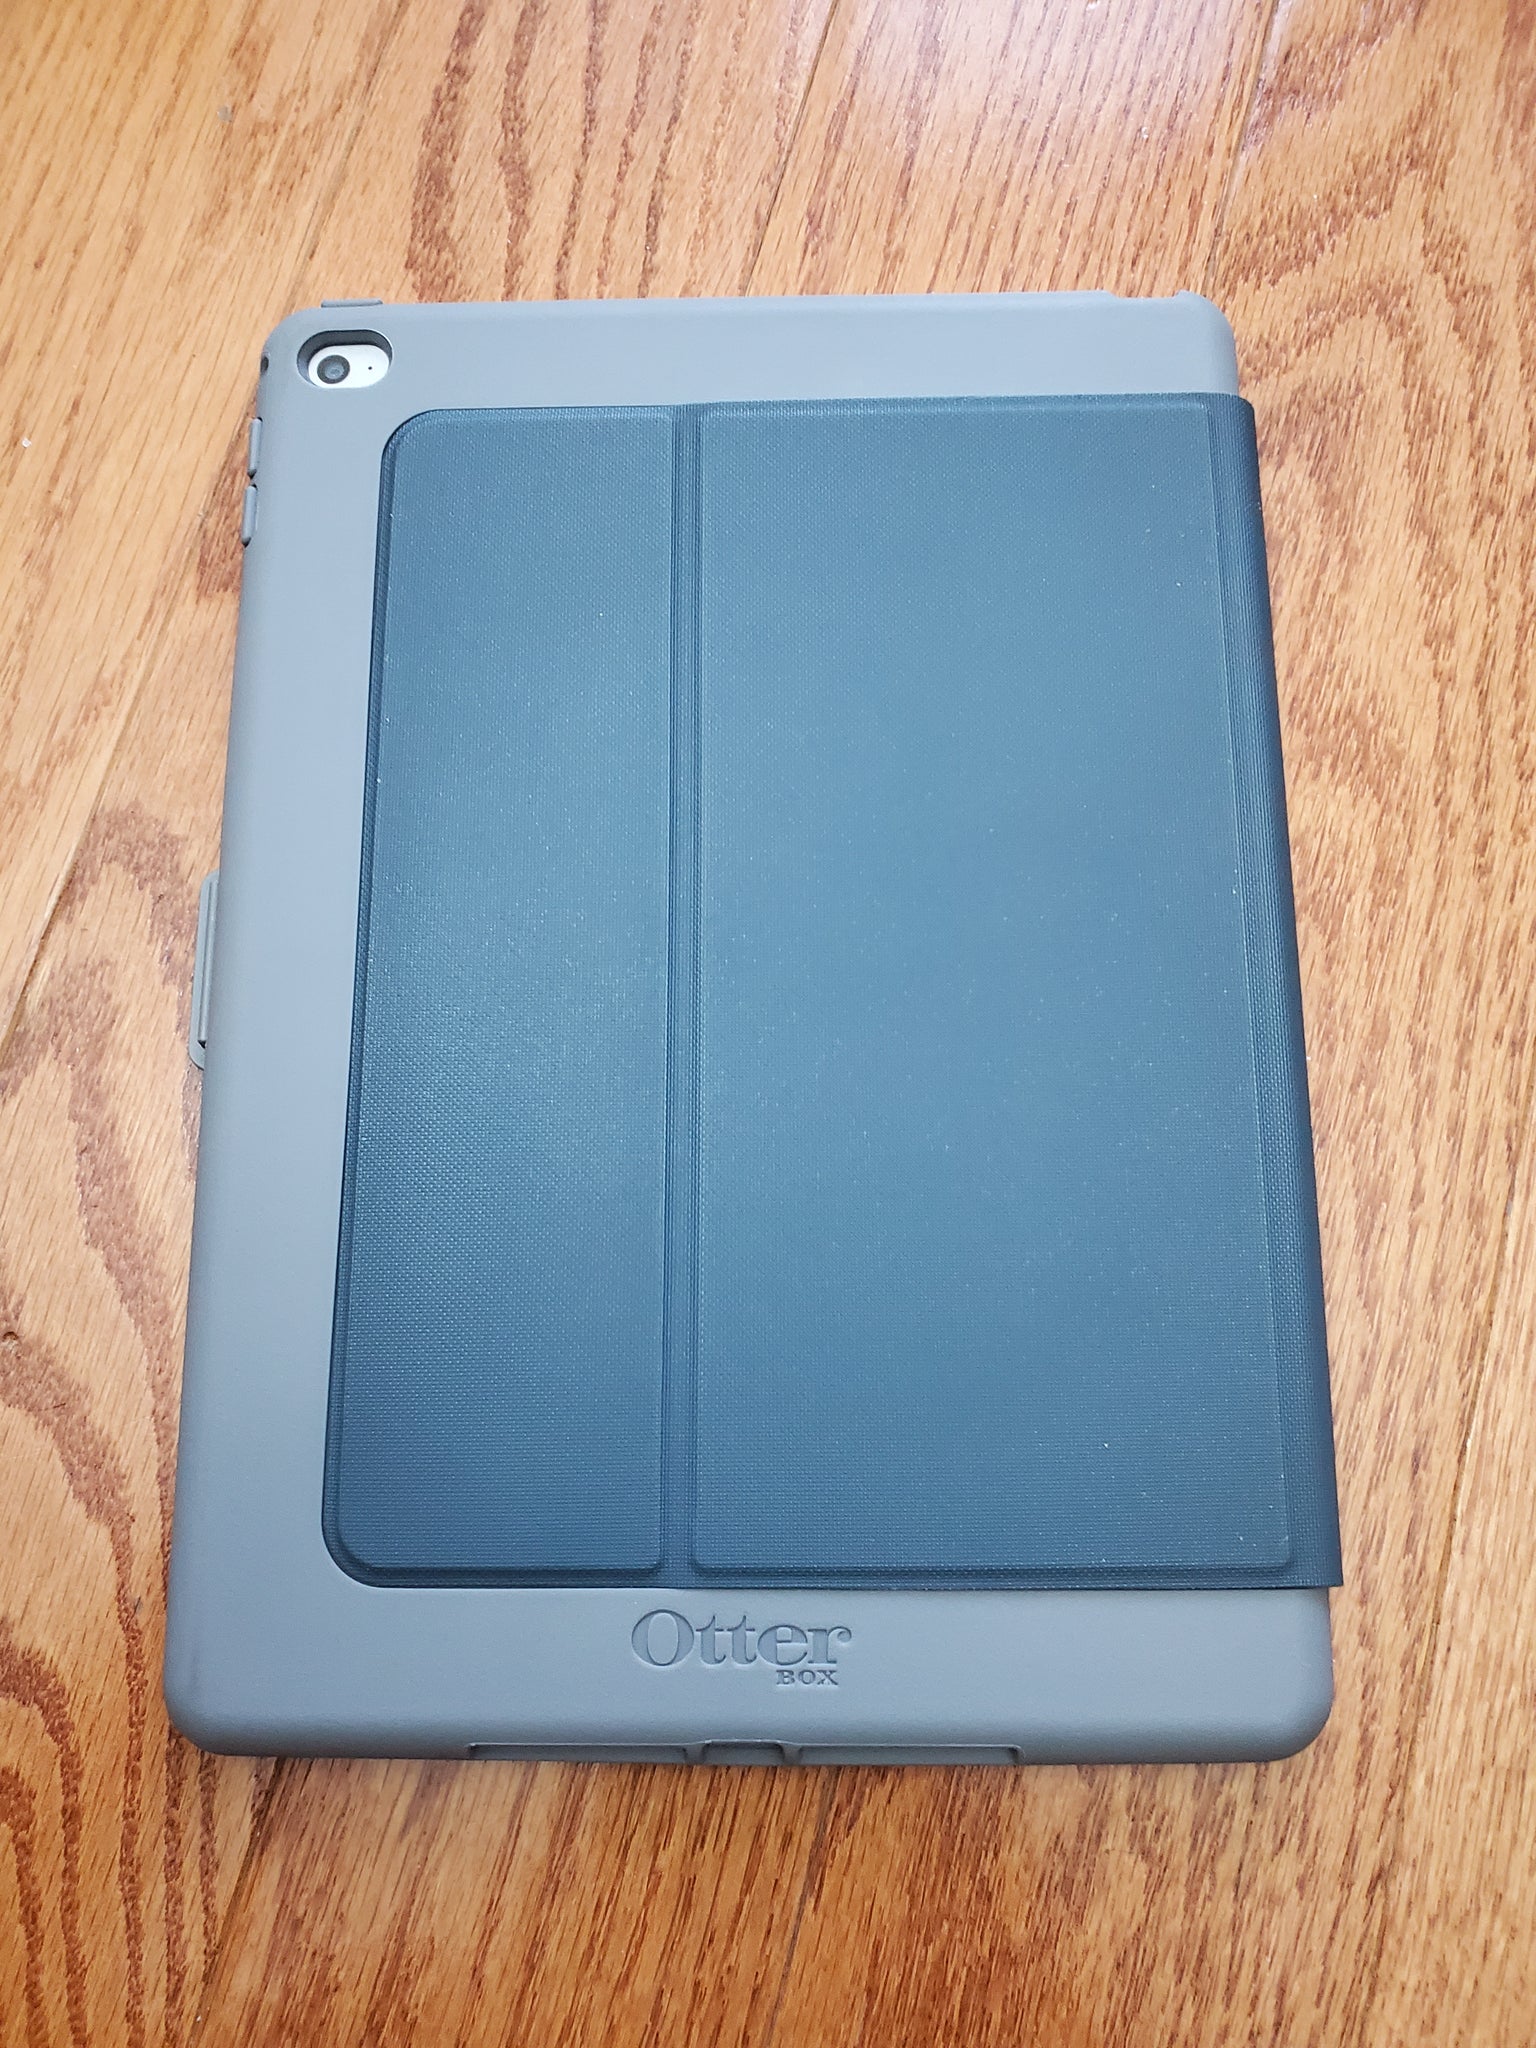 Apple iPad Air Wi-Fi + Cellular Tablette 64 Go 9.7 IPS (2048 x